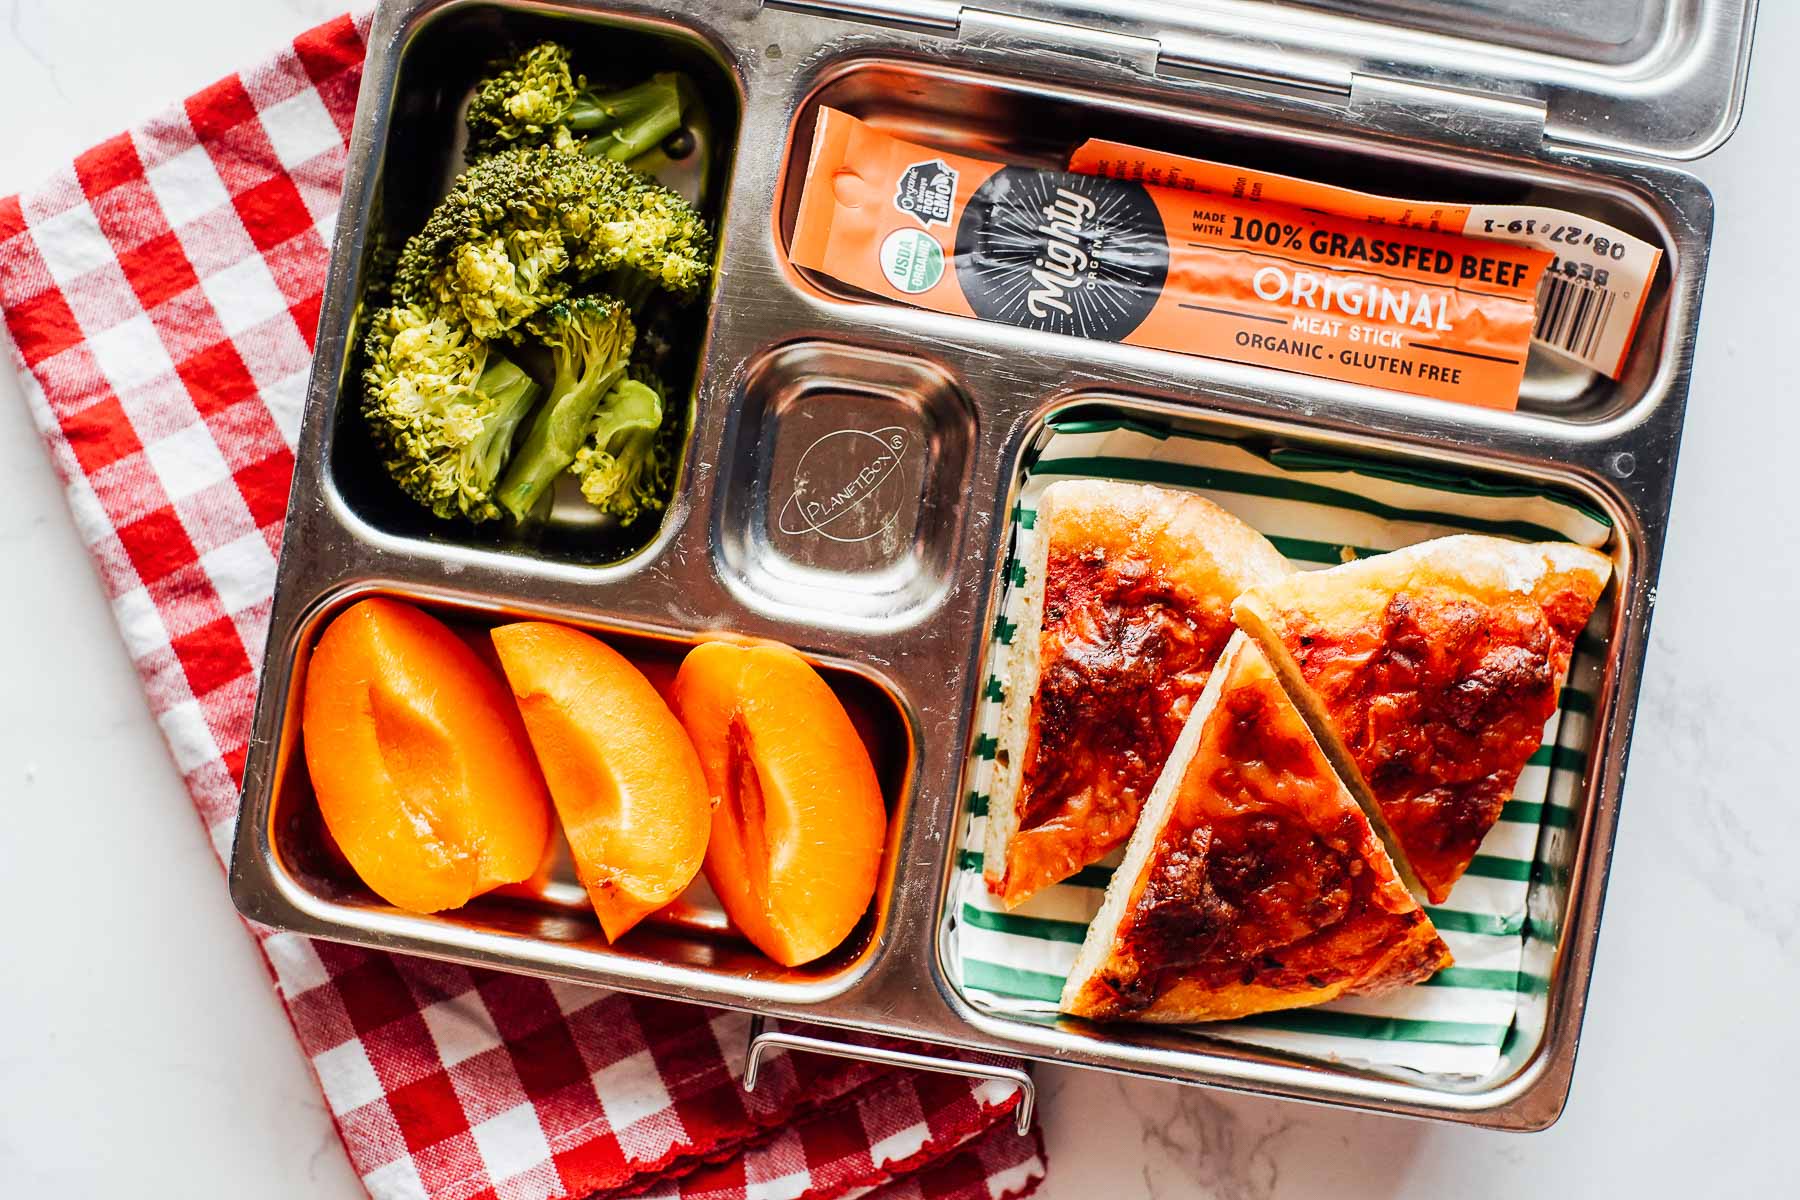 Lunchbox meal: pizza, apricots, roasted broccoli, meat jerky stick.